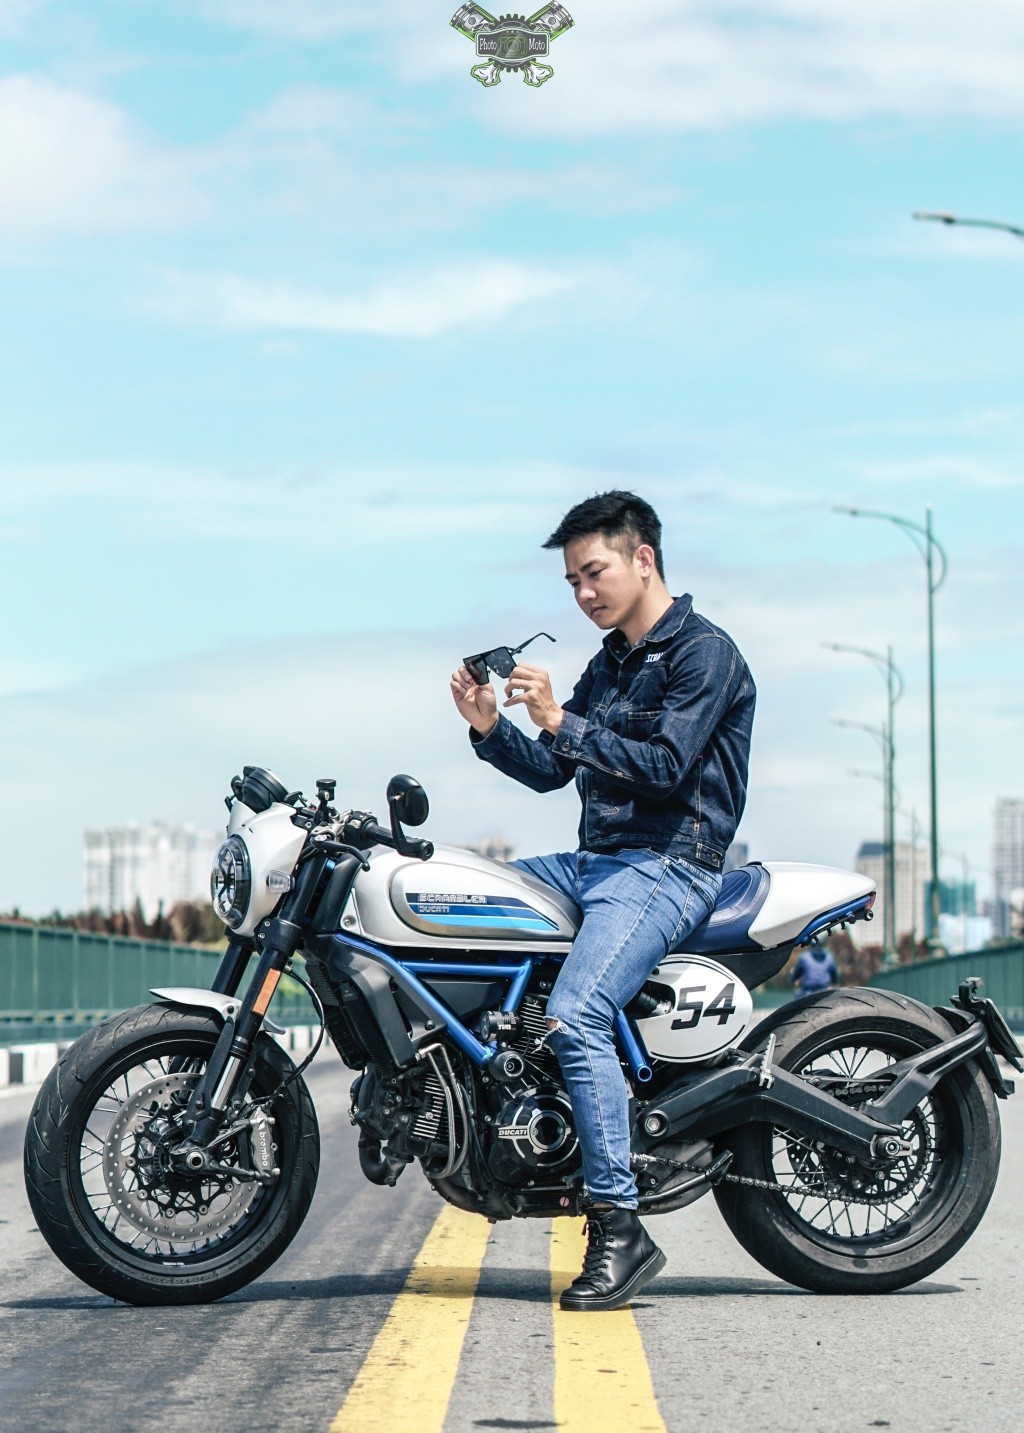 Chọn Ducati Scrambler Cafe Racer 2019 đồng hành, anh Lê Tuấn chia sẻ điều tâm đắc ảnh 11